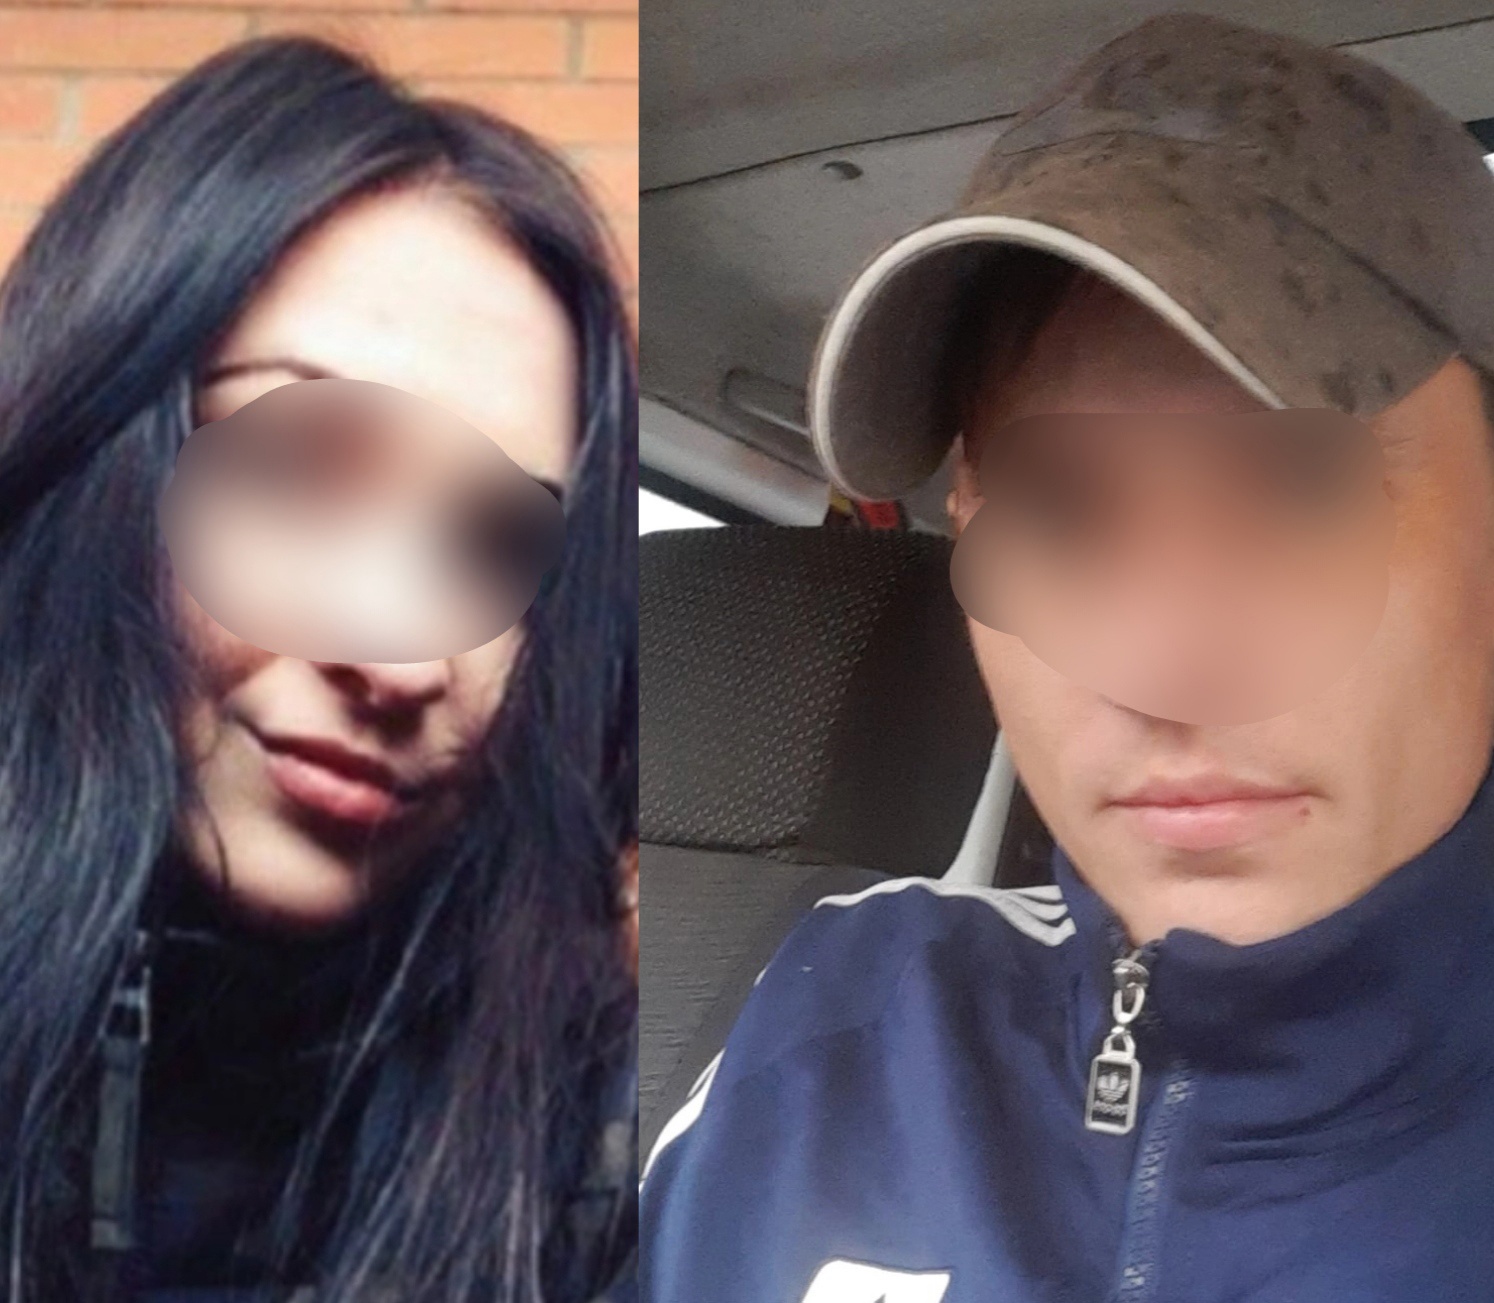 В Ярославле задержали бойфренда девушки, после падения скончавшейся  в коме